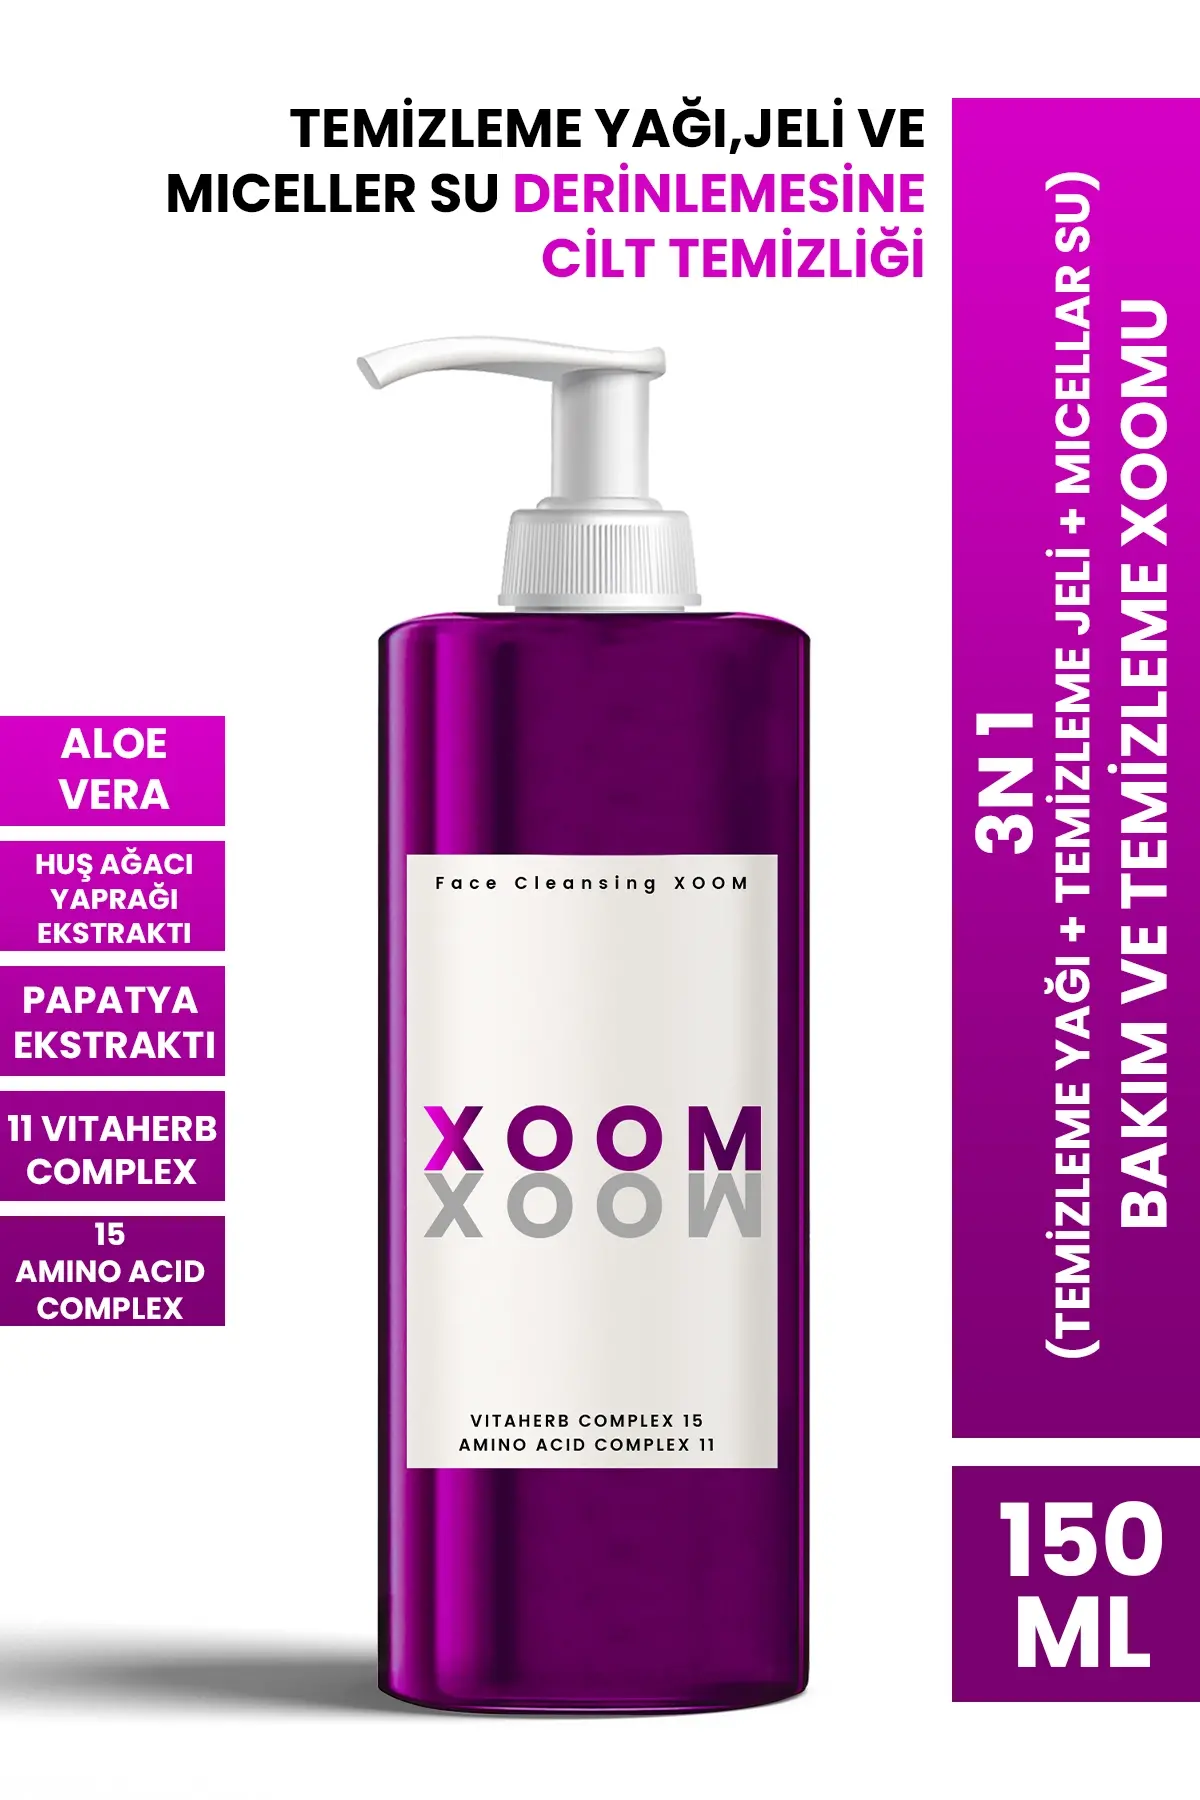 XOOM Make-up Cleansing 150 ML - 1